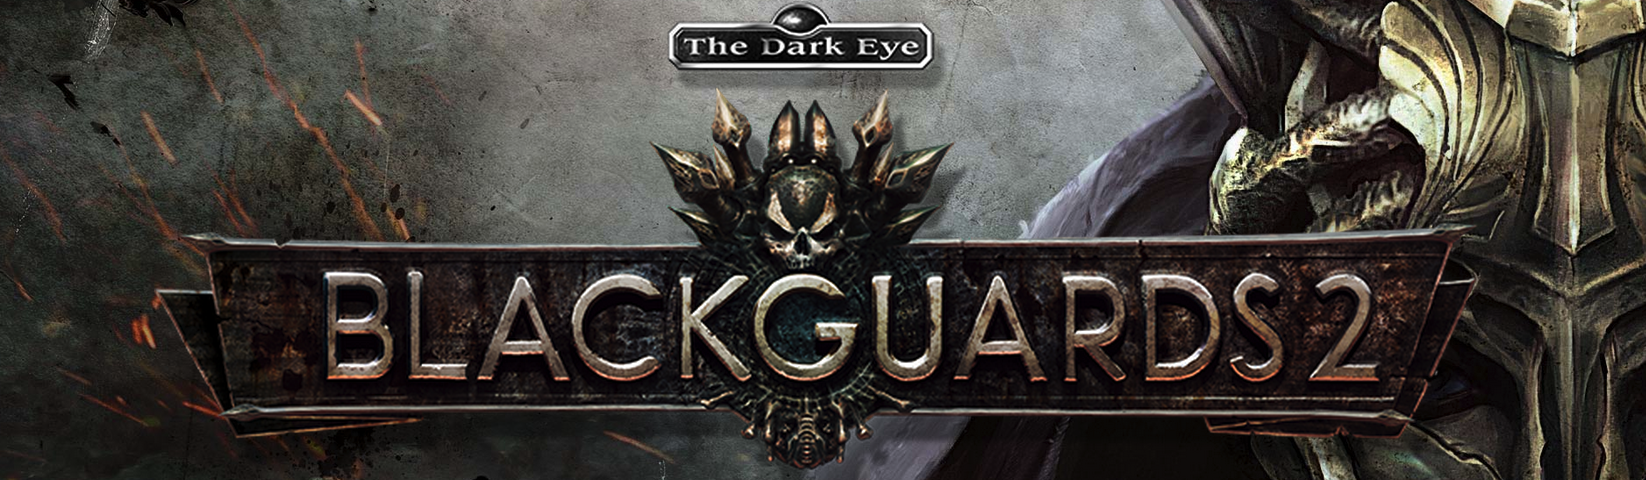 The Dark Eye - Blackguards 2 - bannière